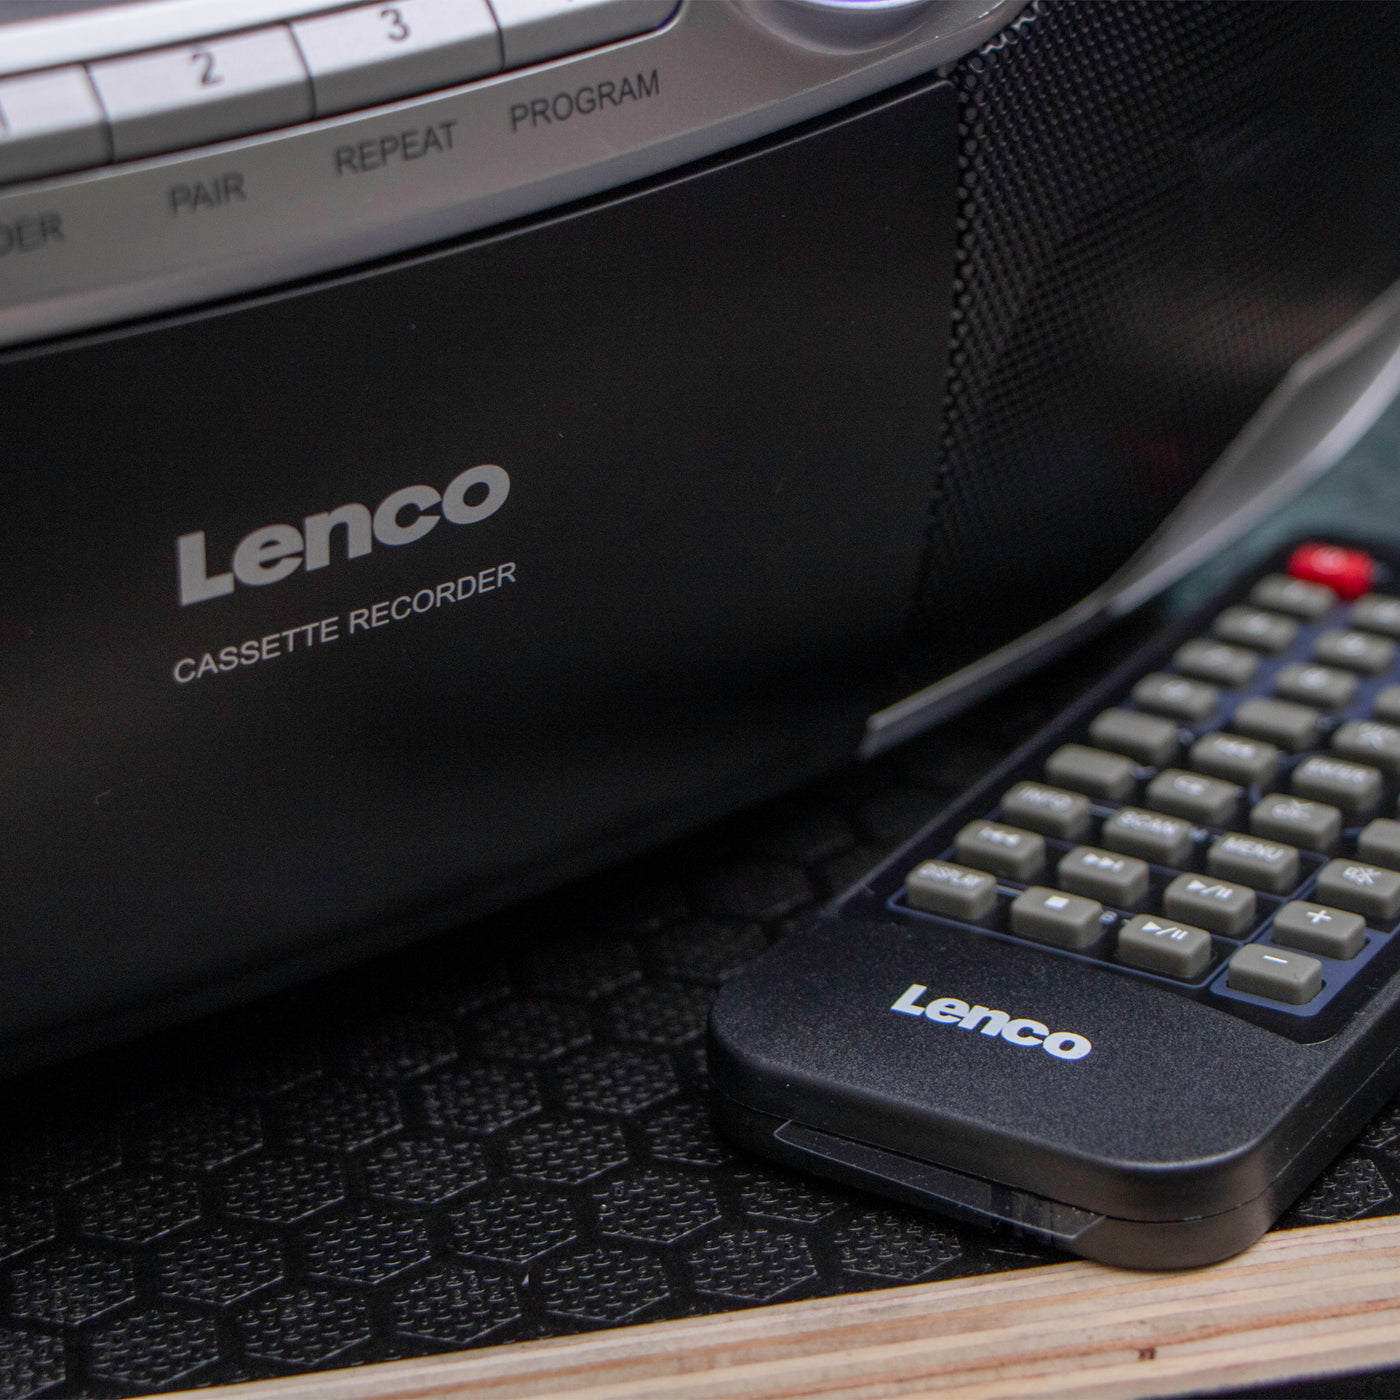 LENCO SCD-720SI - Przenośny boombox z radiem DAB+/FM, Bluetooth®, CD, magnetofonem kasetowym i odtwarzaczem USB - Srebrny